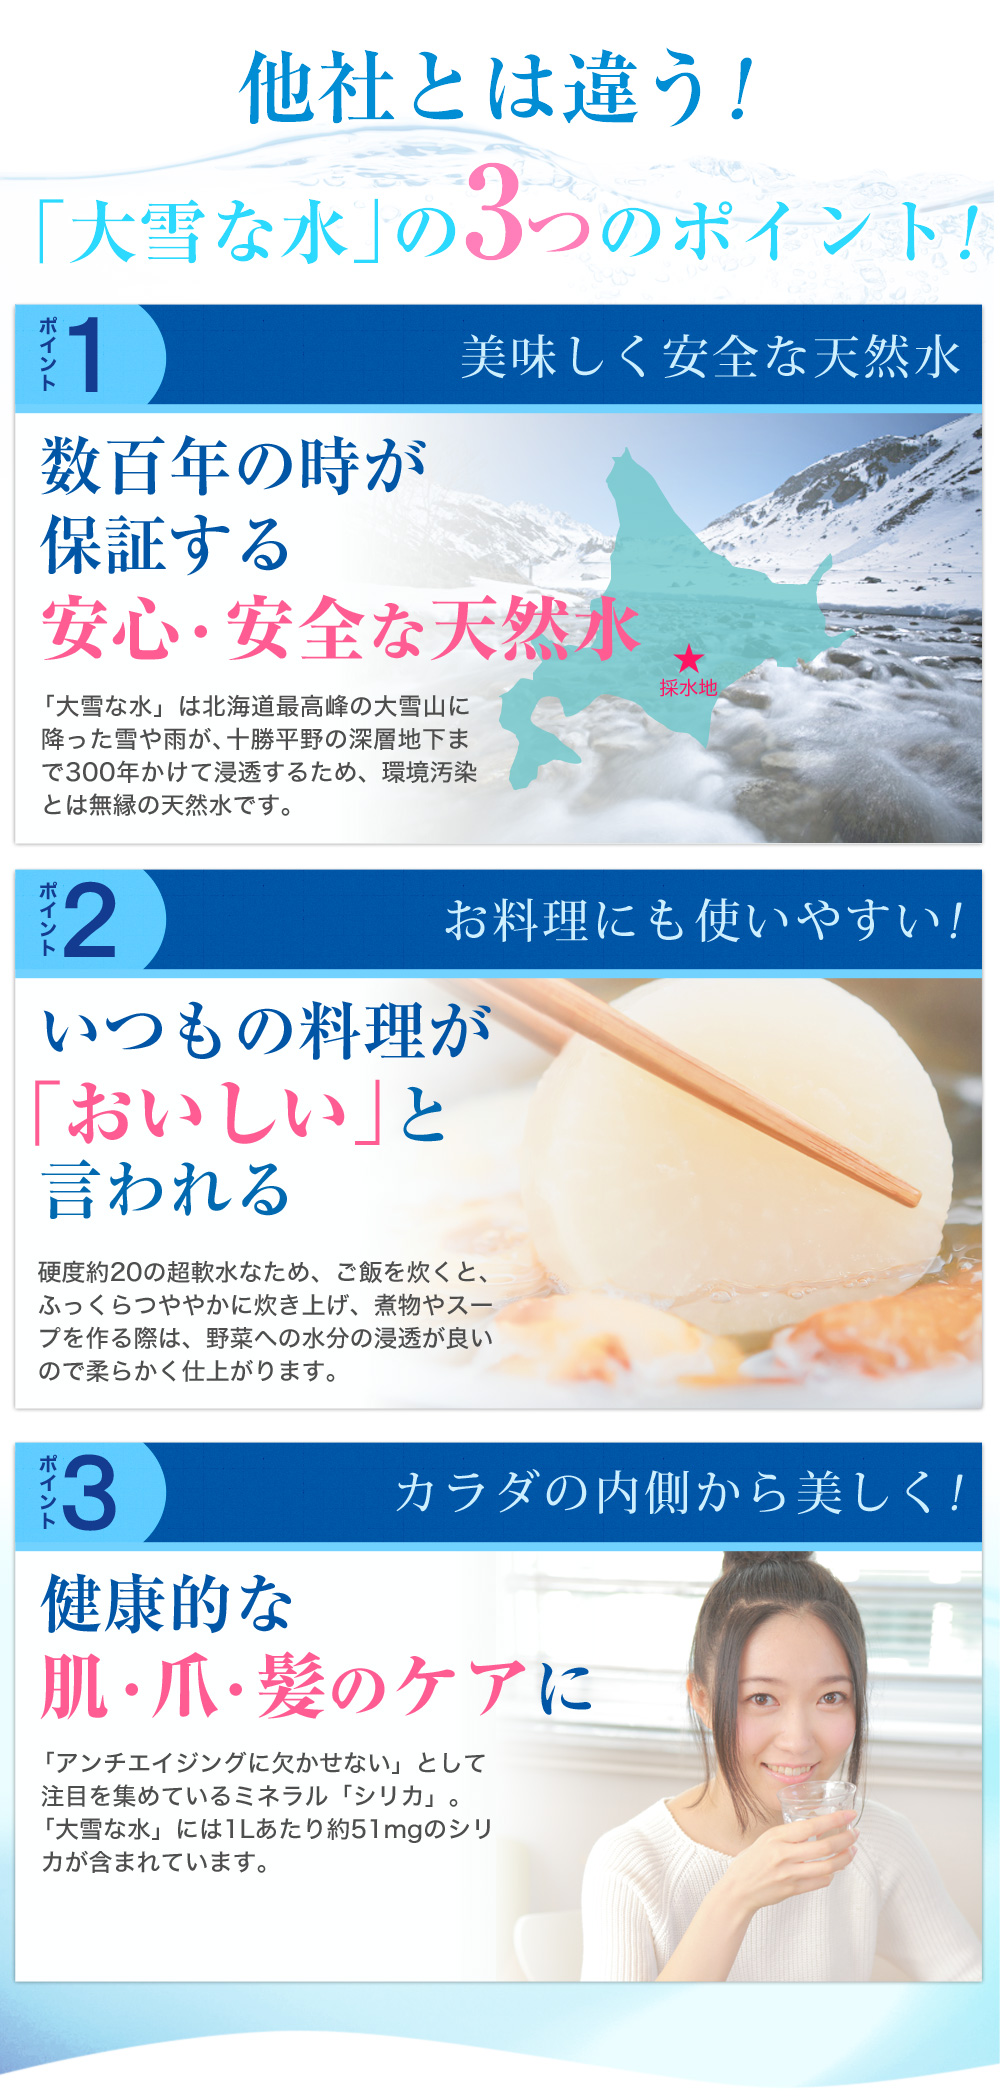 大雪な水.jp - 鎌田醤油株式会社